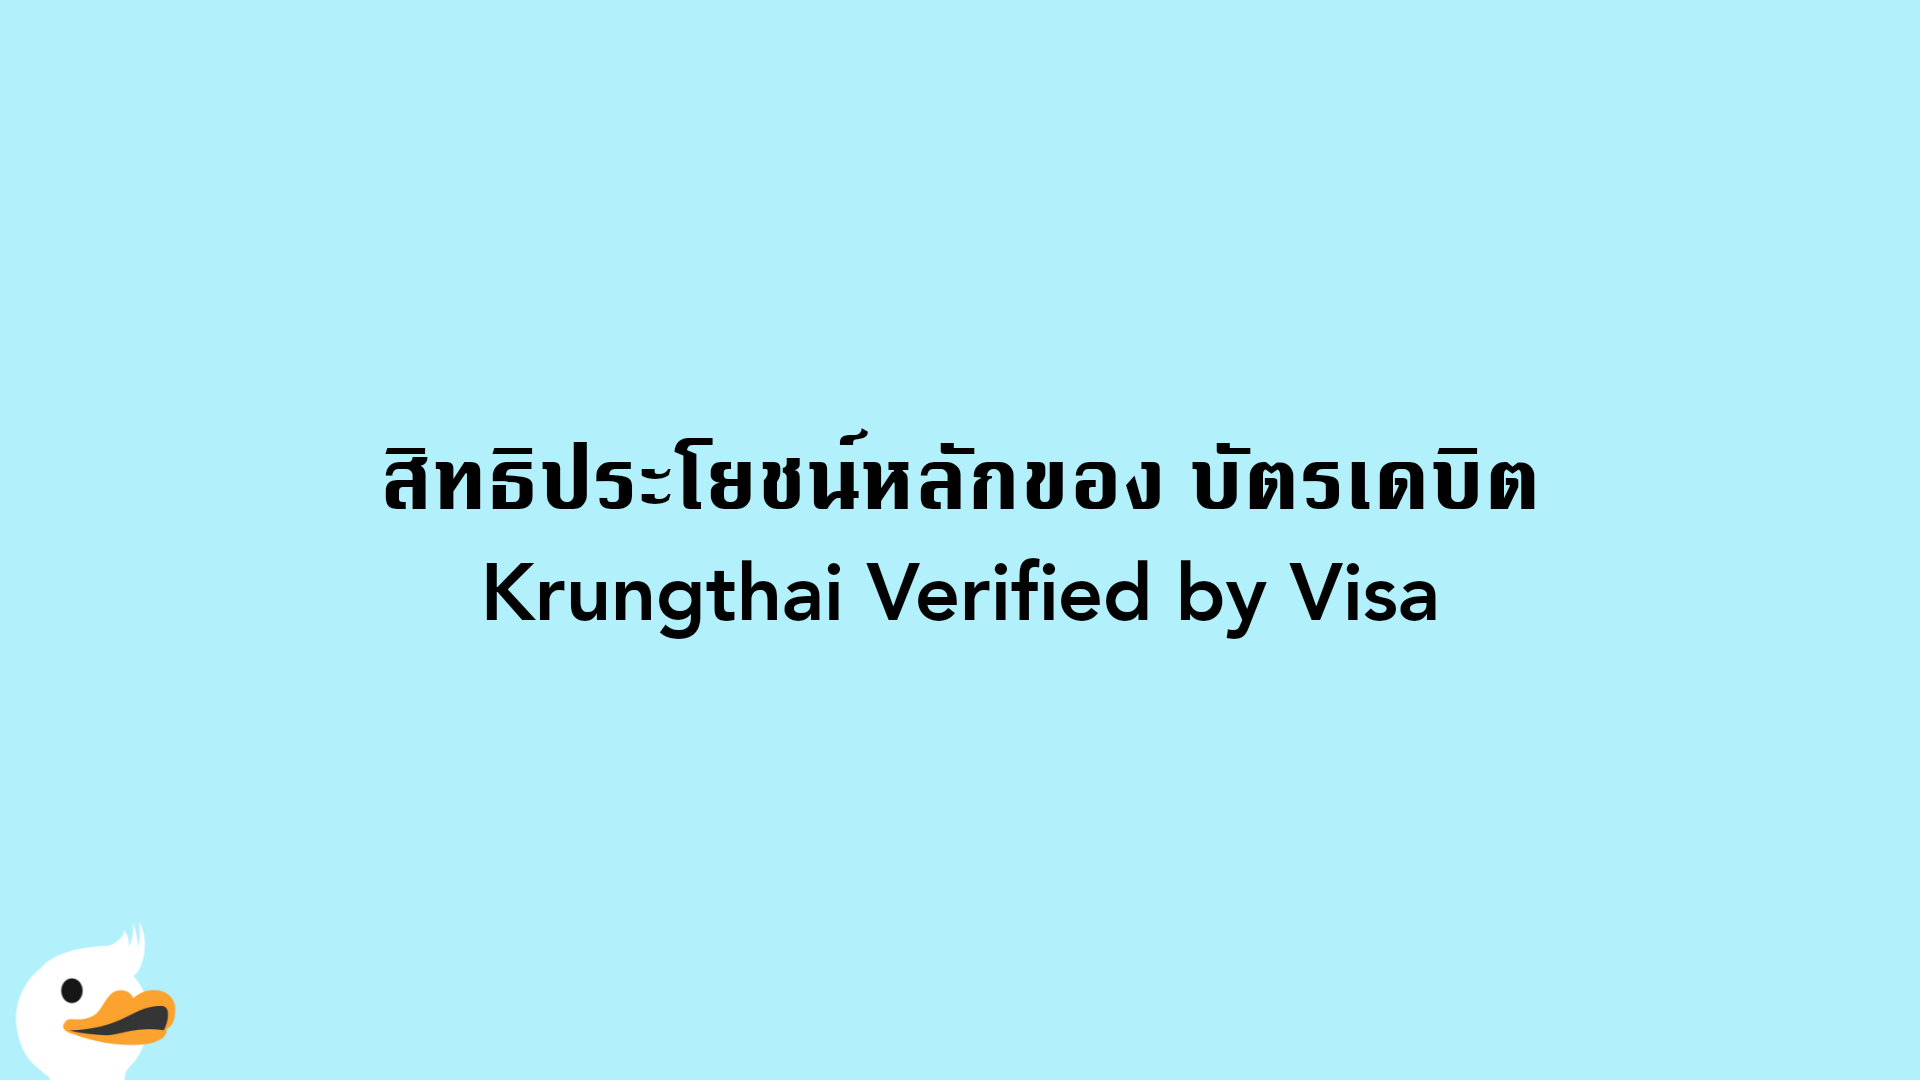 สิทธิประโยชน์หลักของ บัตรเดบิตKrungthai Verified by Visa